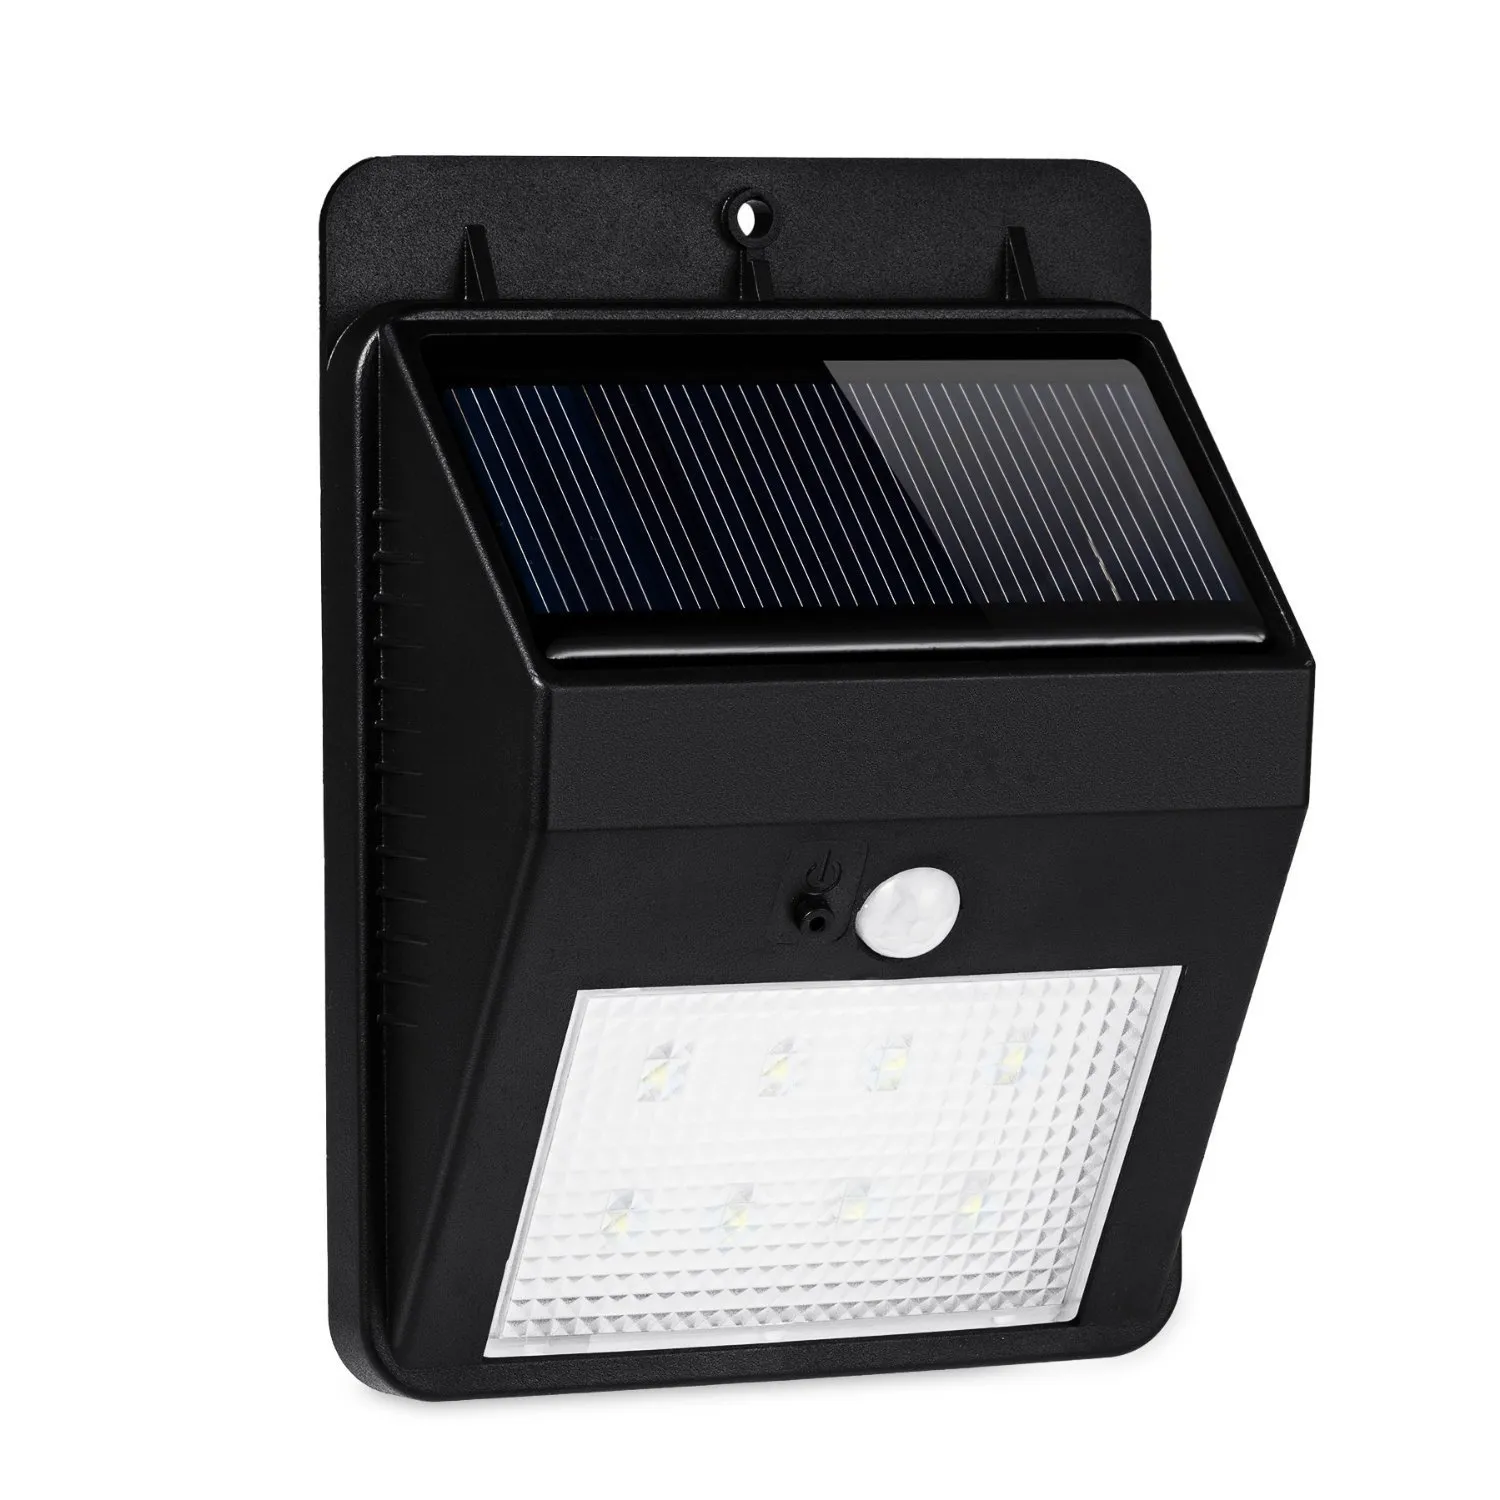 Zonne-lampen 8 LED Outdoor Draadloze Waterdichte Security Motion Sensor Light voor Patio, Deck, Yard, Tuin, Oprijlaan